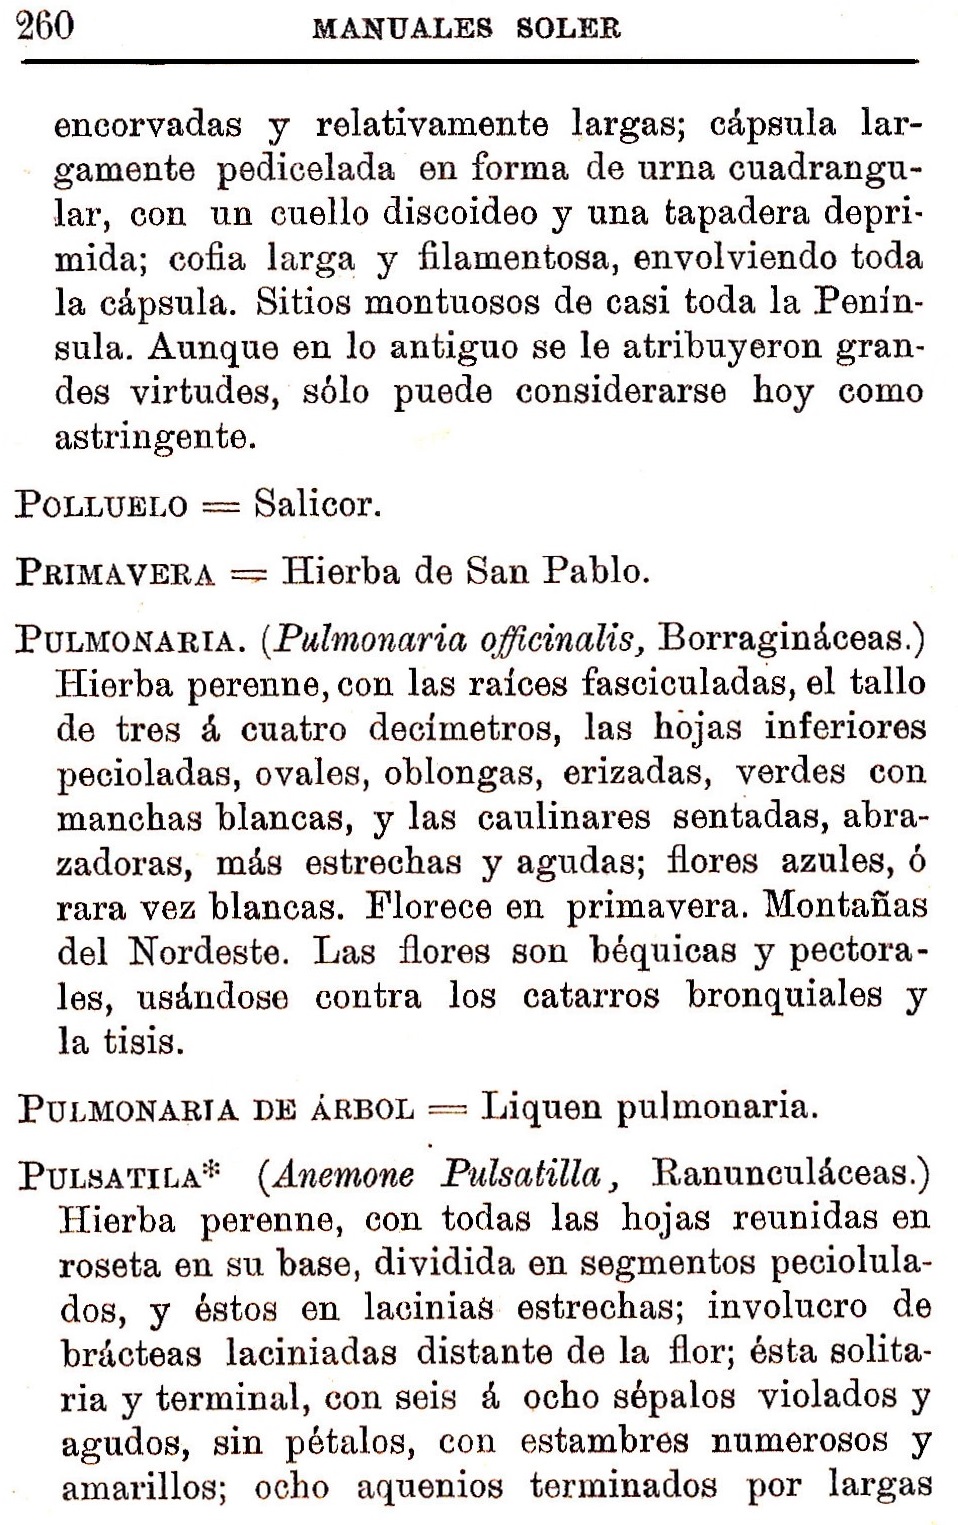 Plantas Medicinales. Blas Lazaro Ibiza. Índice alfabético de plantas. P. Polluelo.